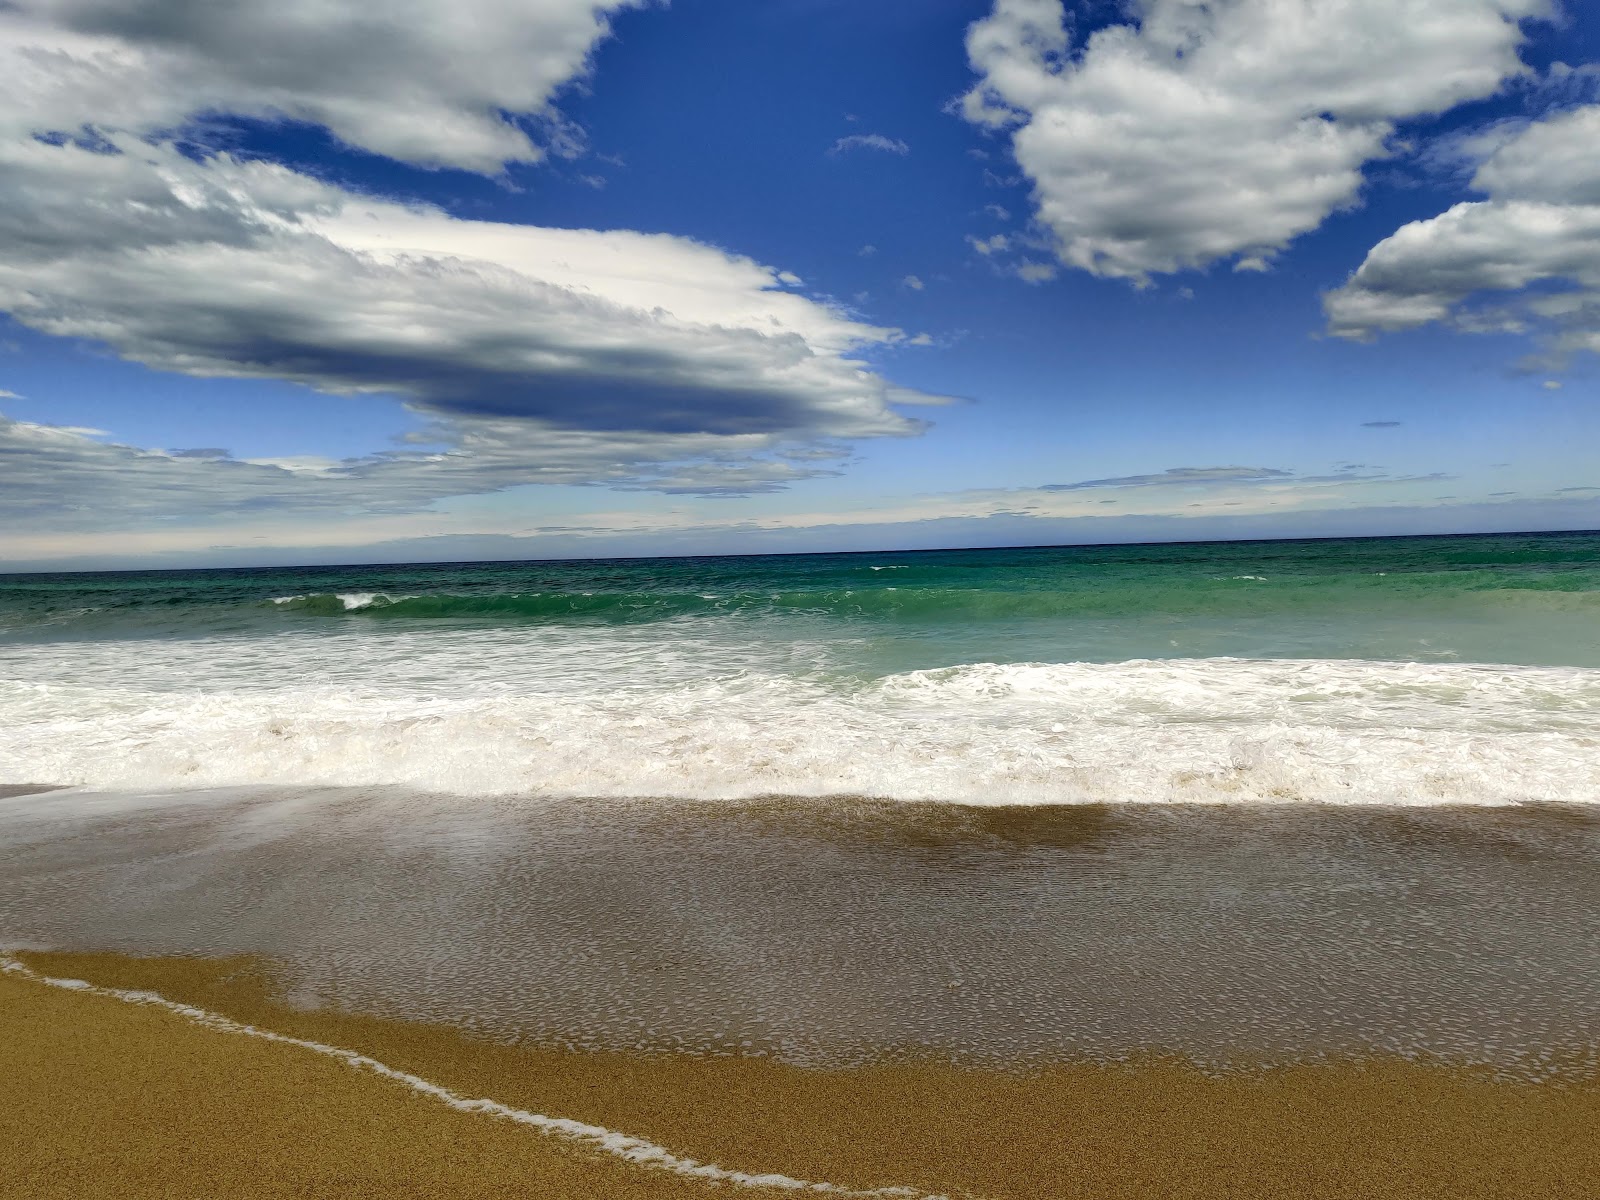 Fotografija S14 Beach nahaja se v naravnem okolju